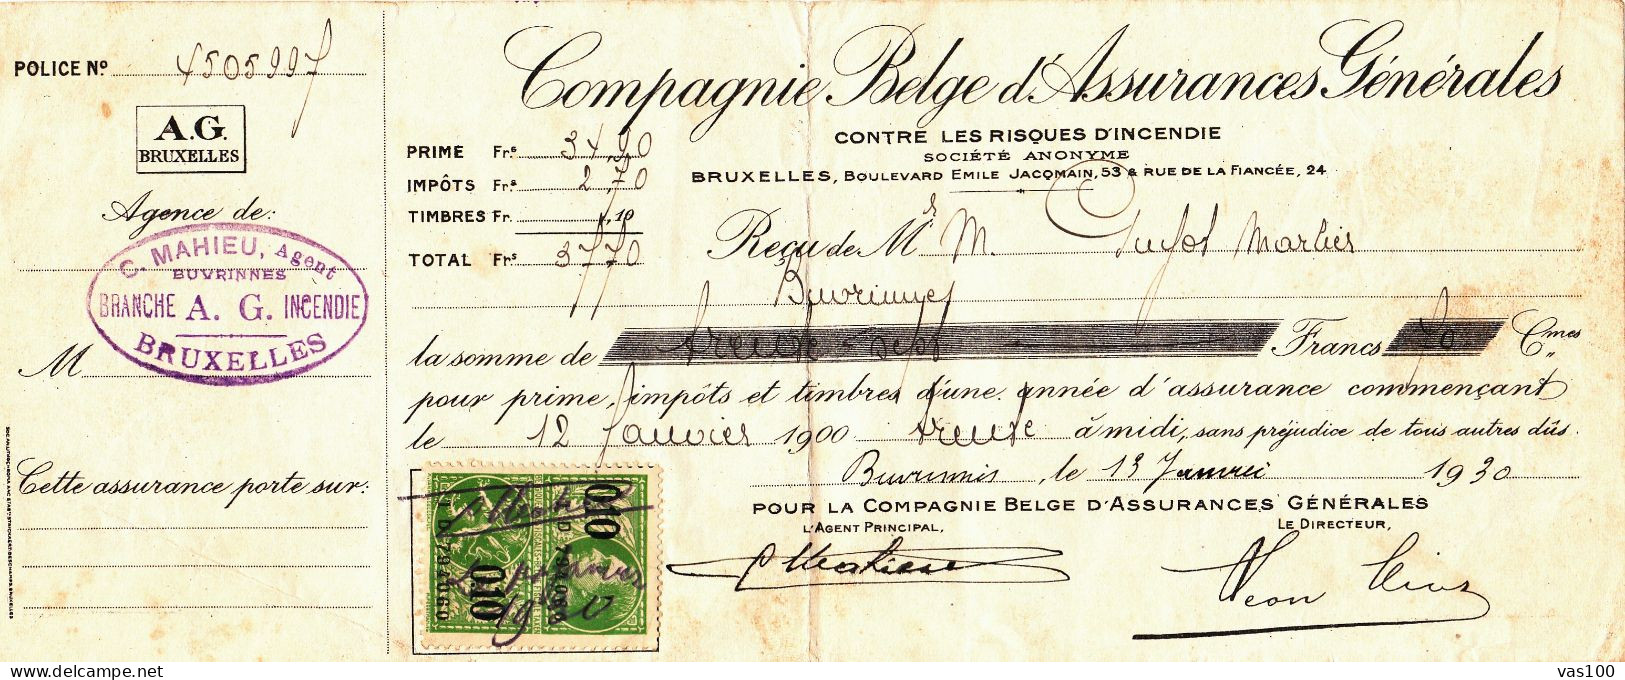 COMPAGNIE BELGE D'ASSURANCES GENERALES CONTRE LES RISQUES D'INCENDIE 1930 BELGIUM - Dokumente